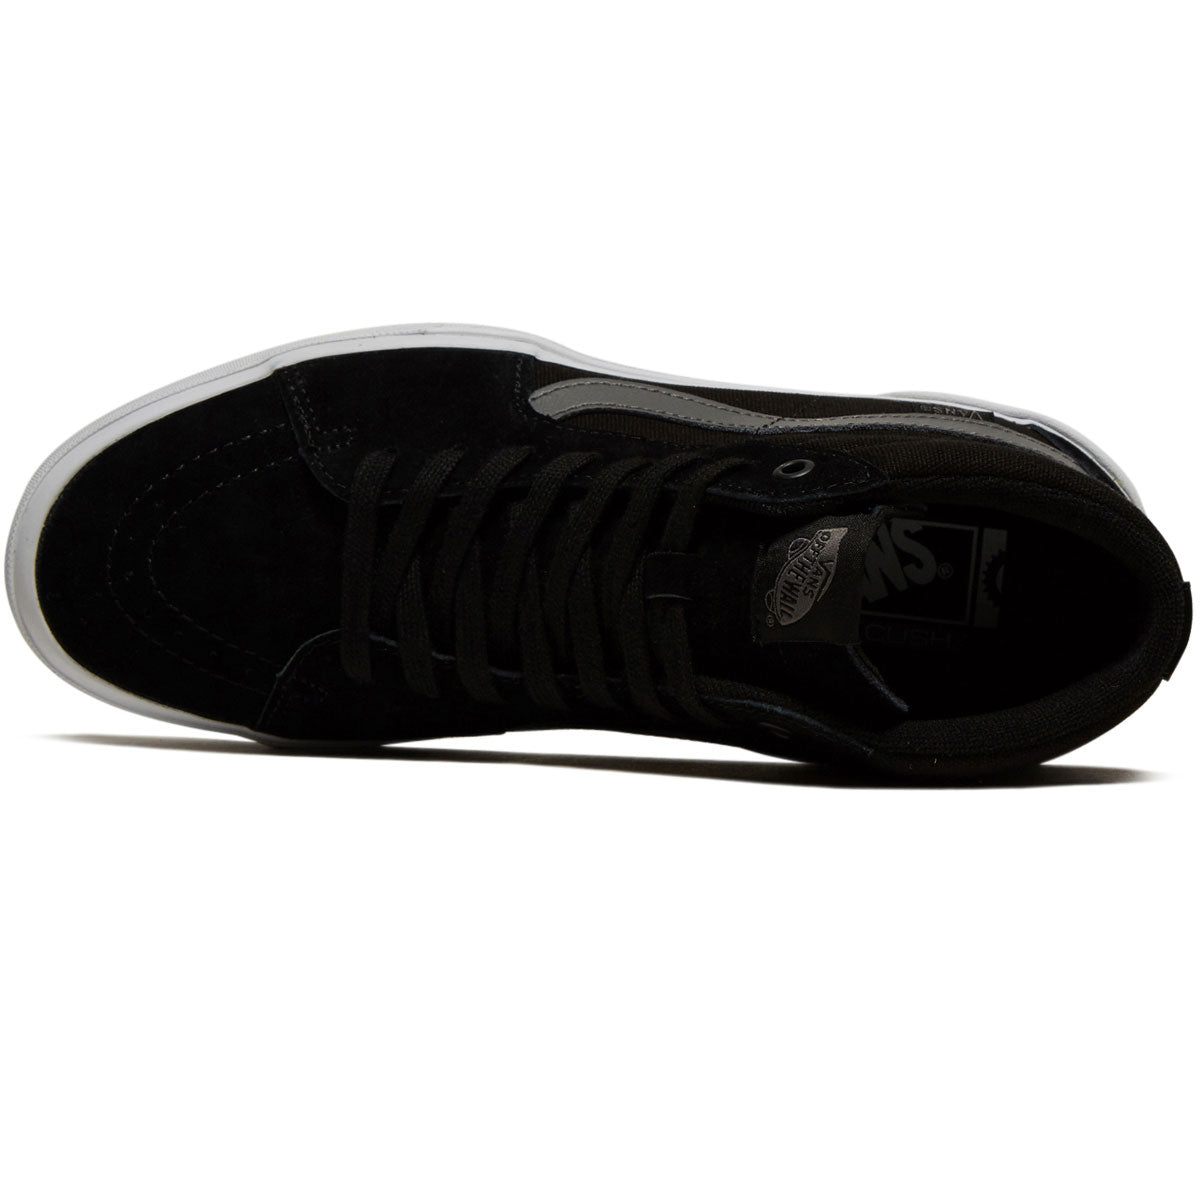 Vans Bmx Sk8-hi Shoes - Black/White/Grey image 3